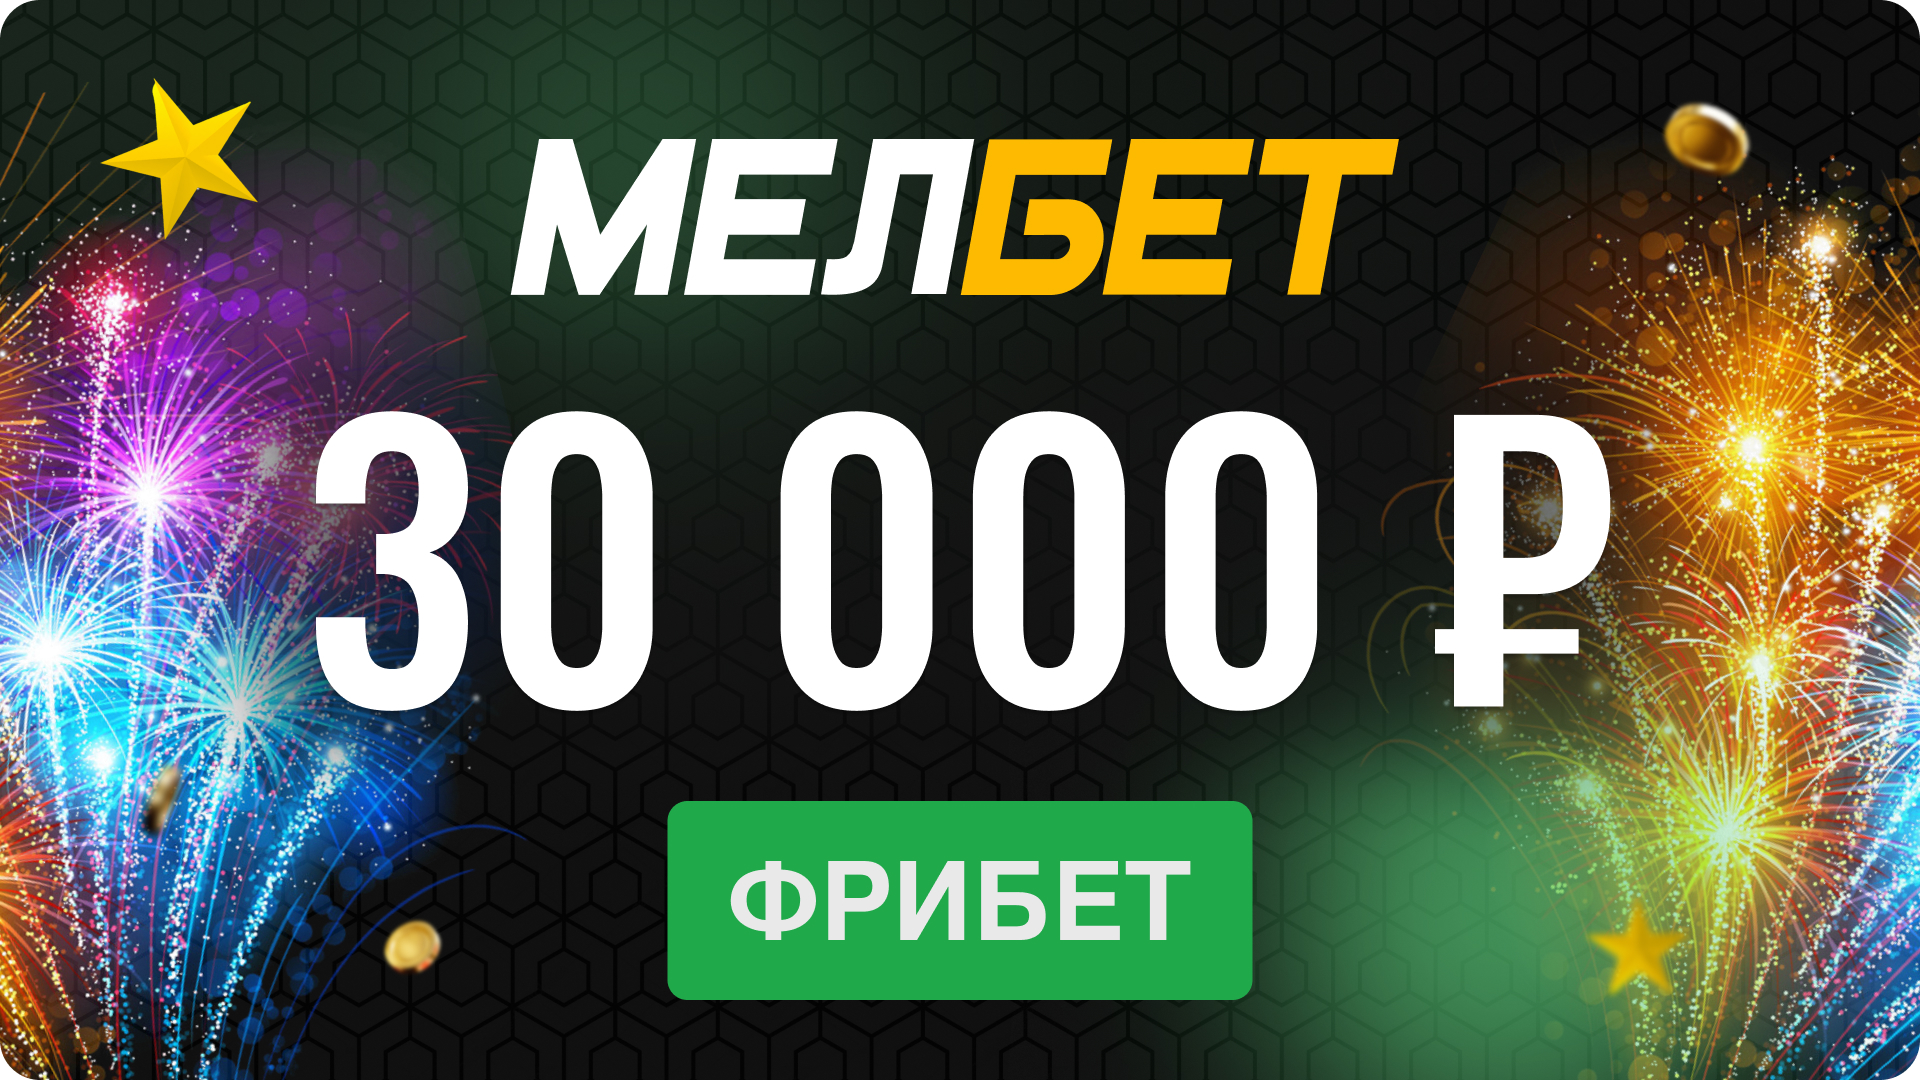 Промокод в Мелбет: бонус до 30000 рублей за регистрацию